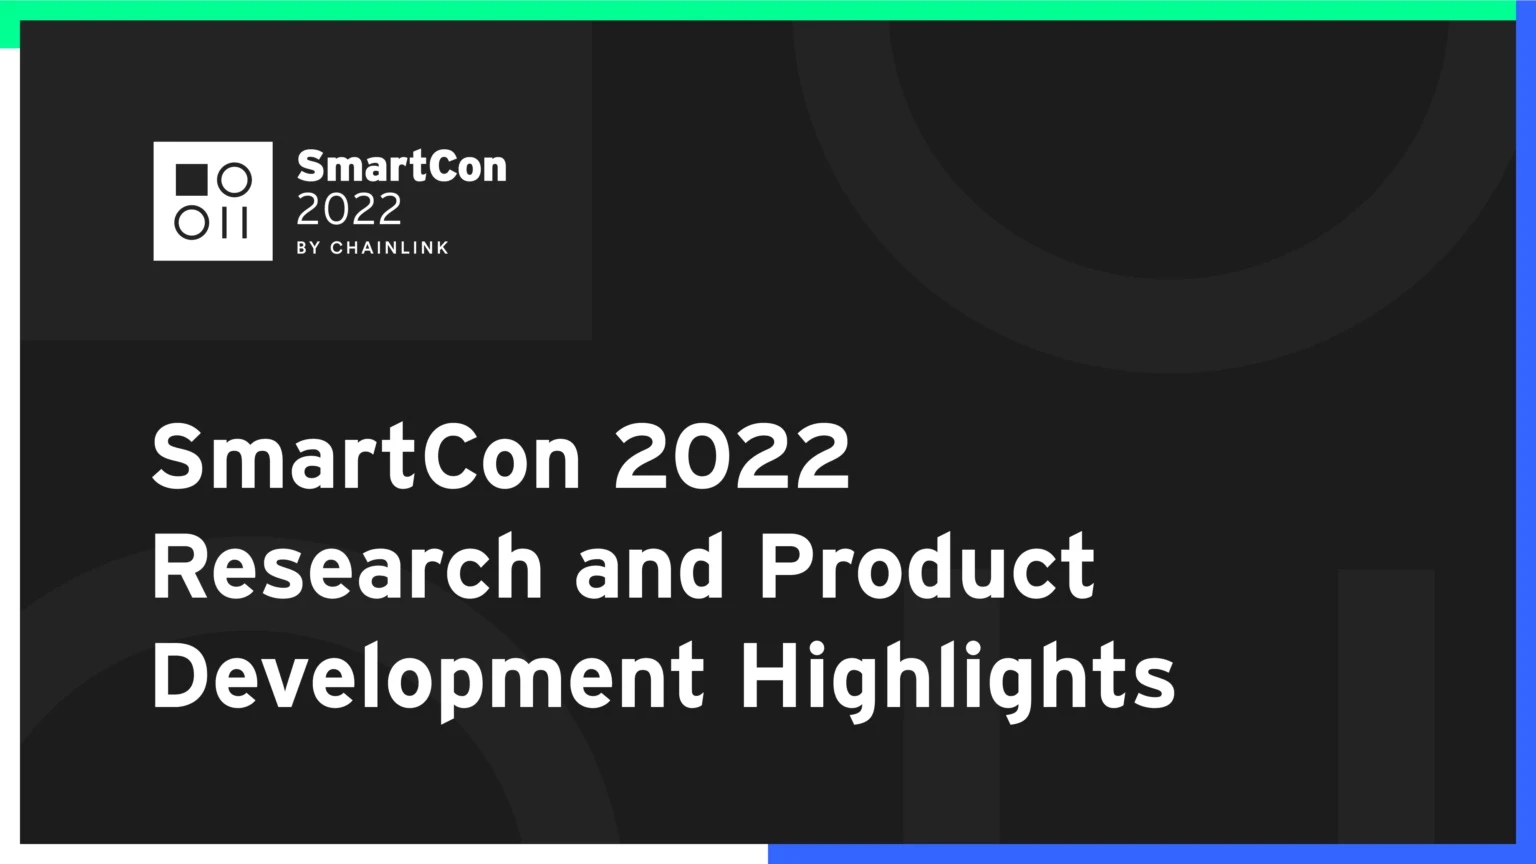 Phân tích các điểm nổi bật về nghiên cứu và phát triển được công bố tại SmartCon 2022